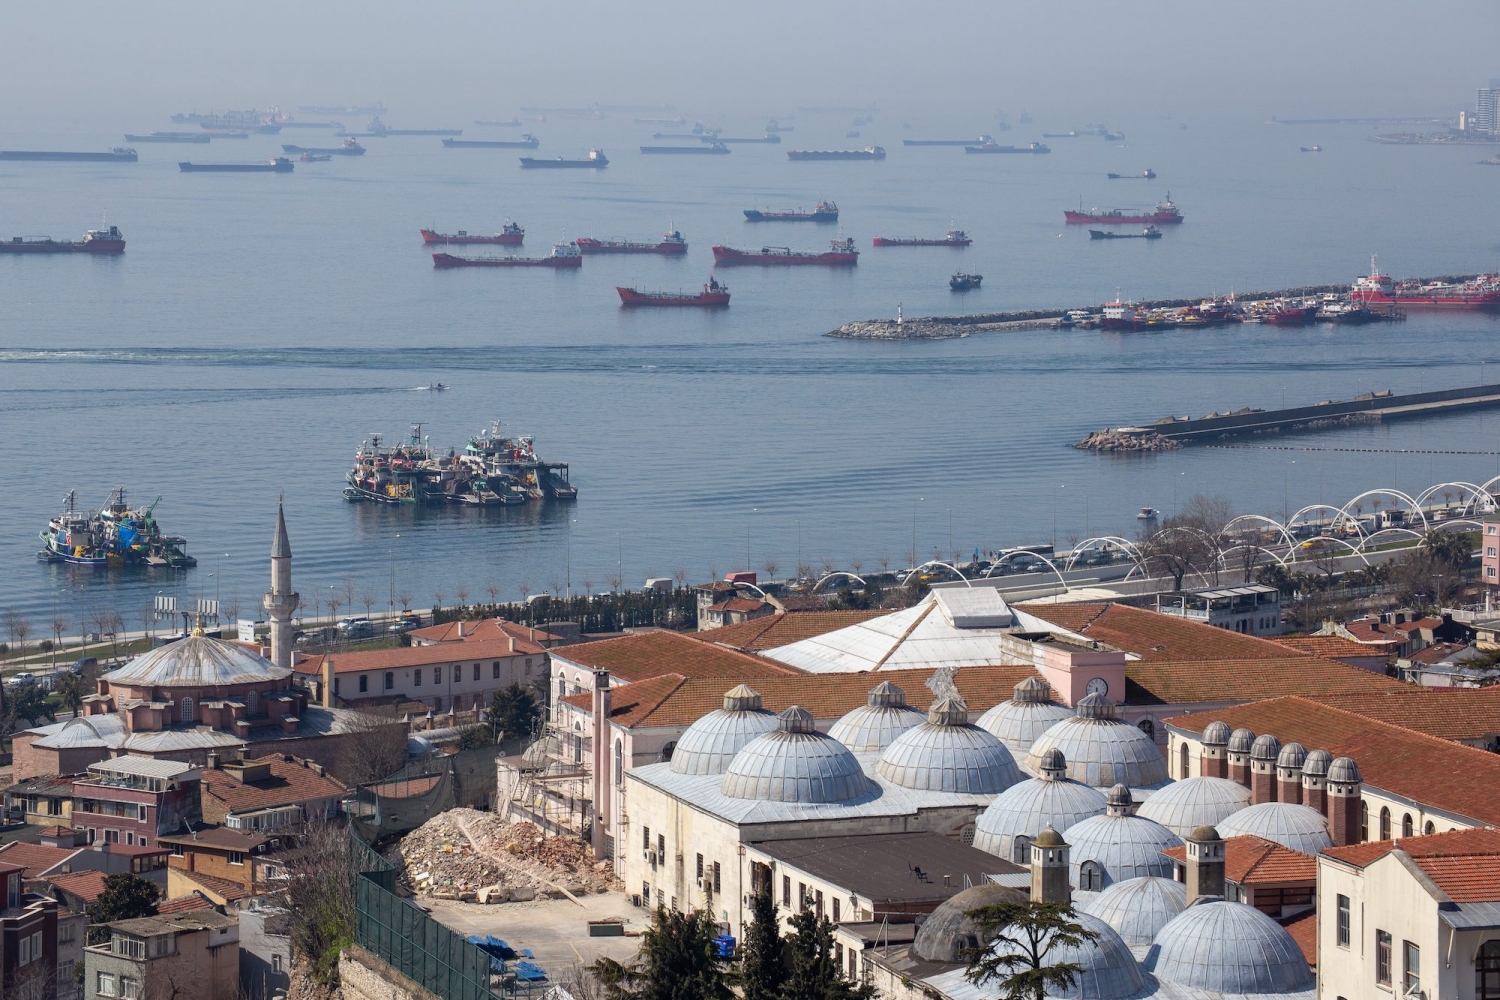 Vì sao tàu chở dầu ùn tắc lớn trong vùng biển Thổ Nhĩ Kỳ?